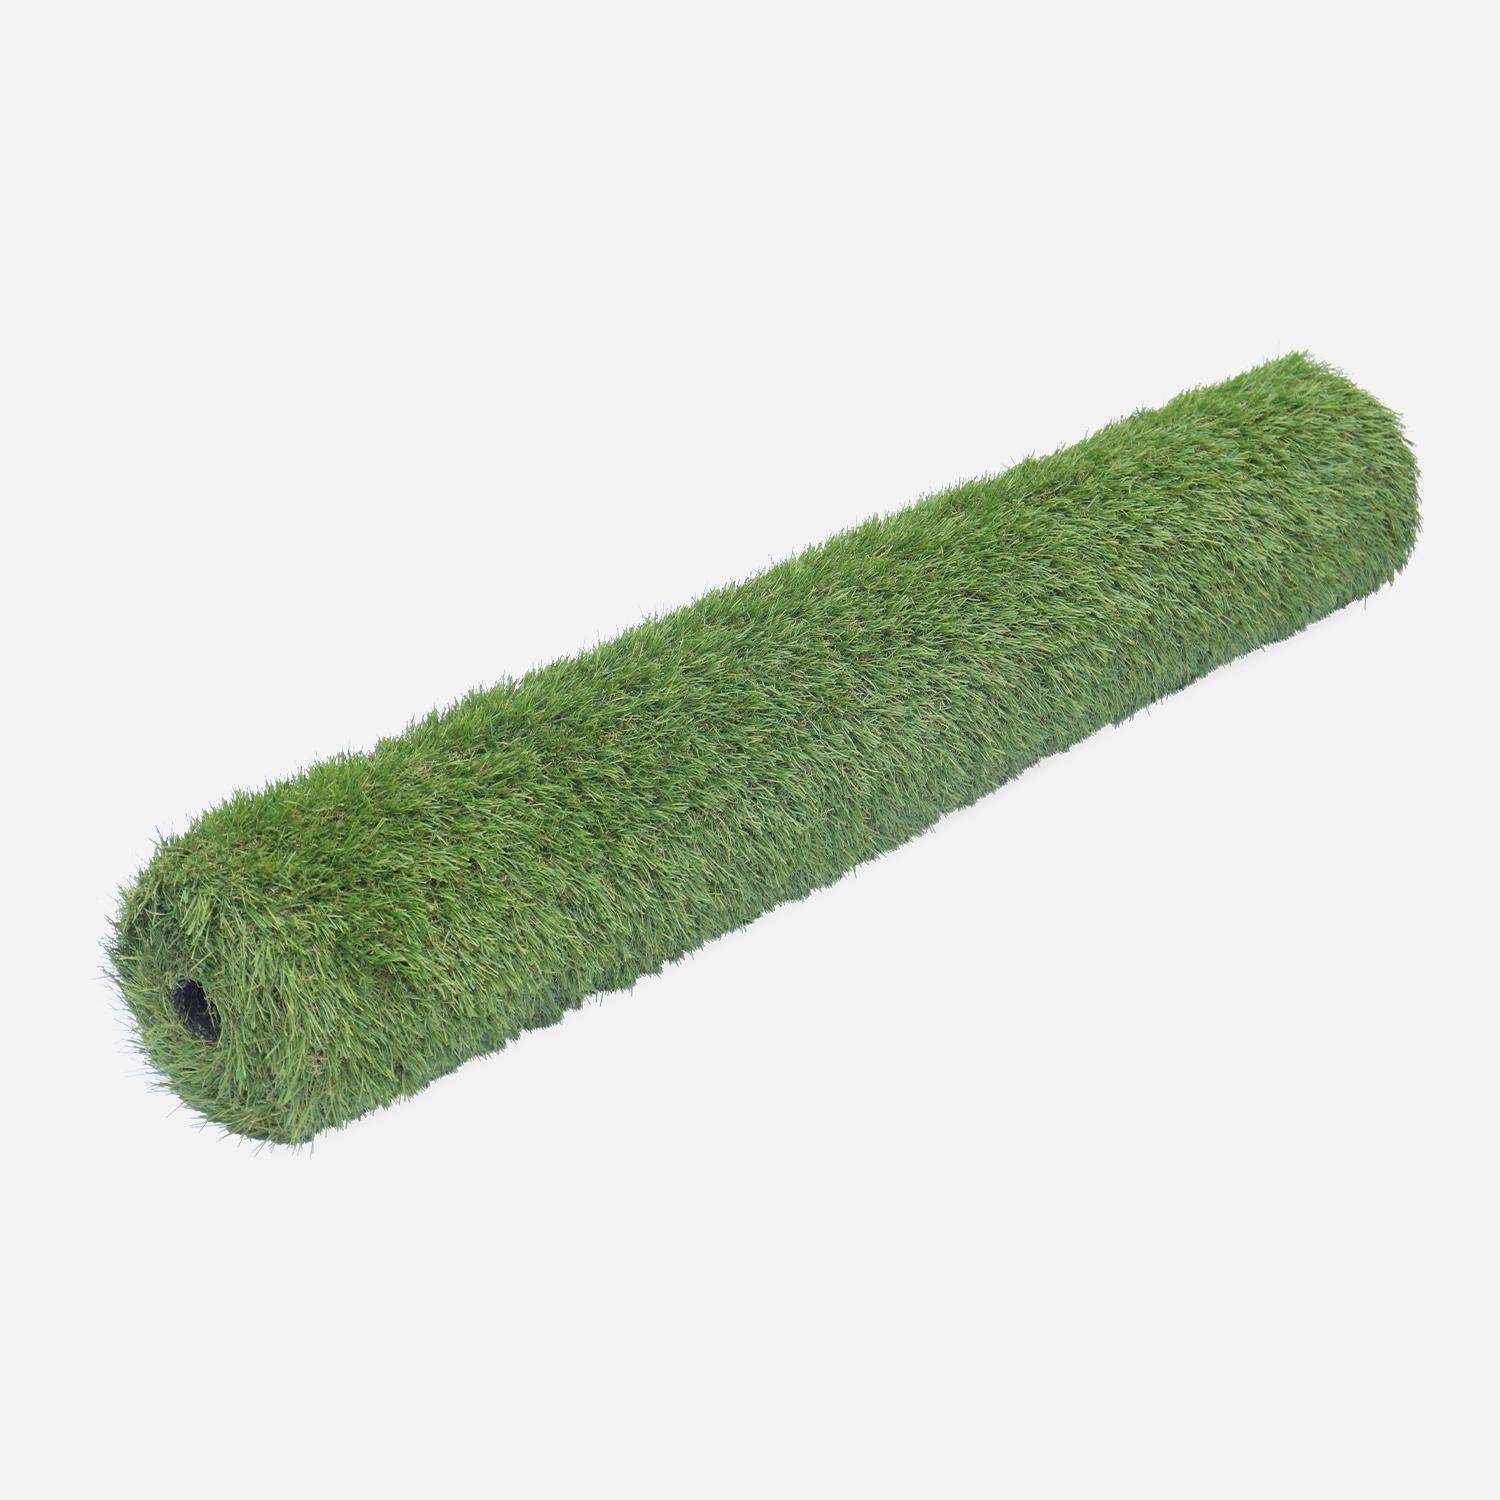 Synthetisch gras 1x4m, dragen, smaragdgroen, kaki groen en beige strengen, 35mm Photo2